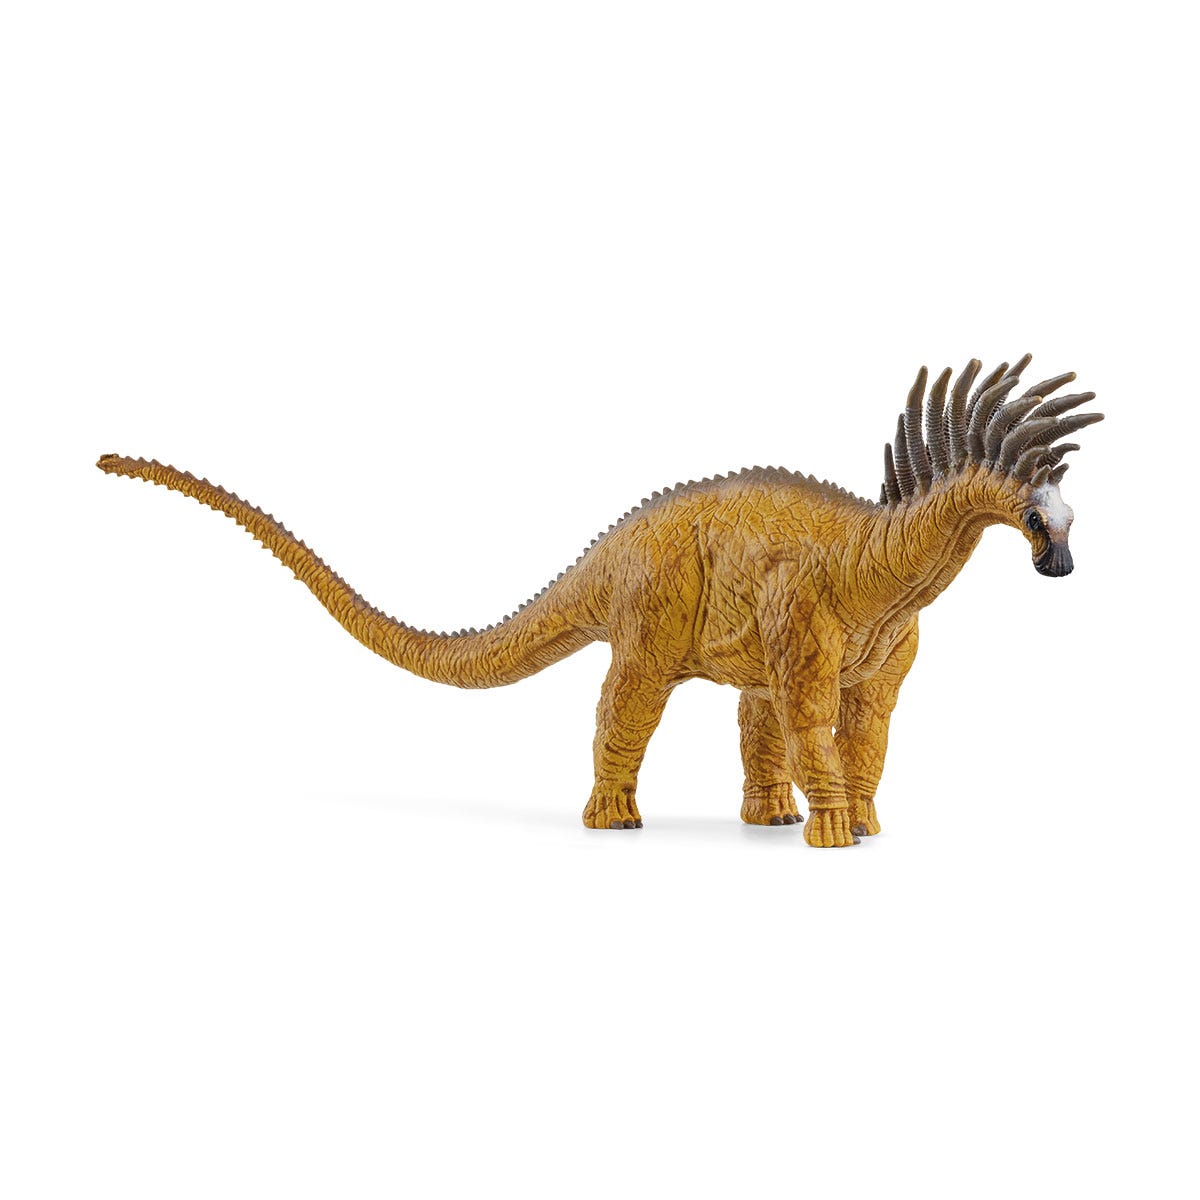 Bajadasaure